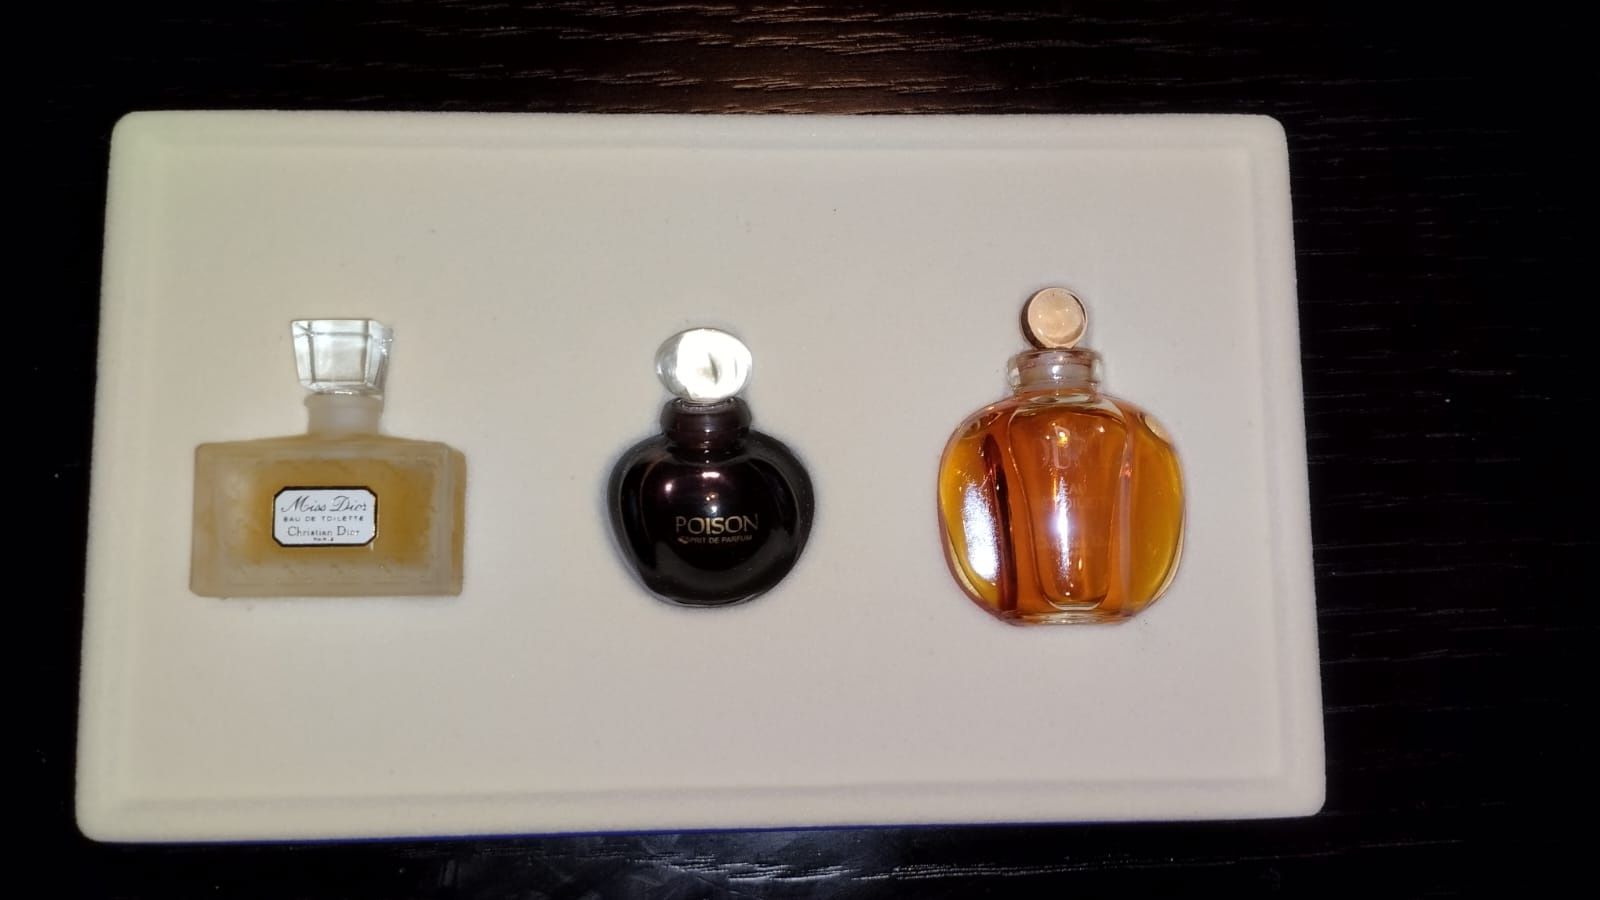 Coffret Christian Dior com três perfumes miniatura original para venda